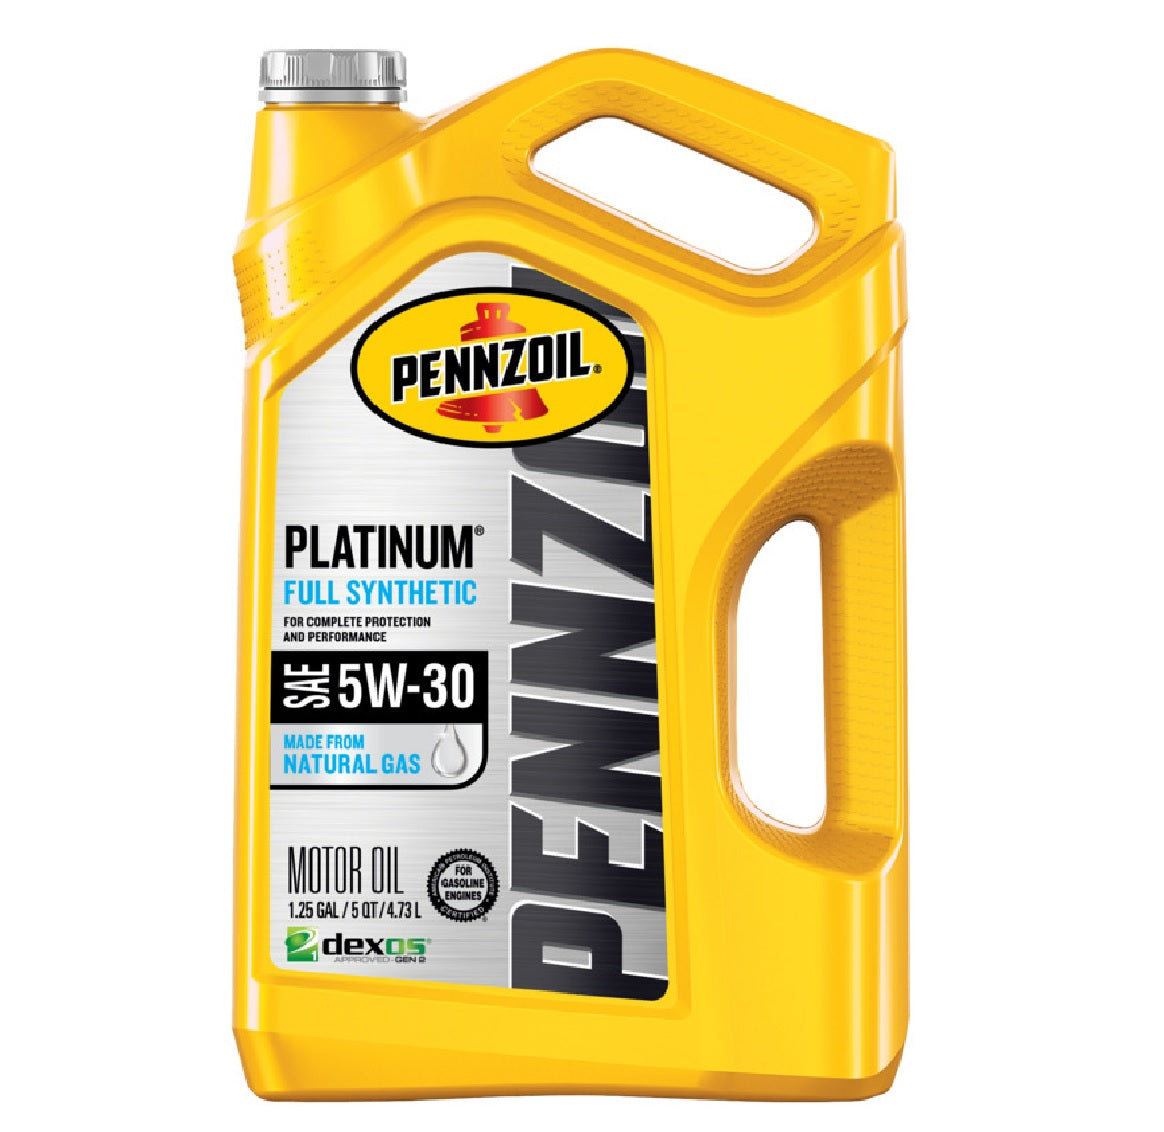 Pennzoil 550046126 Platinum Full Synthetic Motor Oil